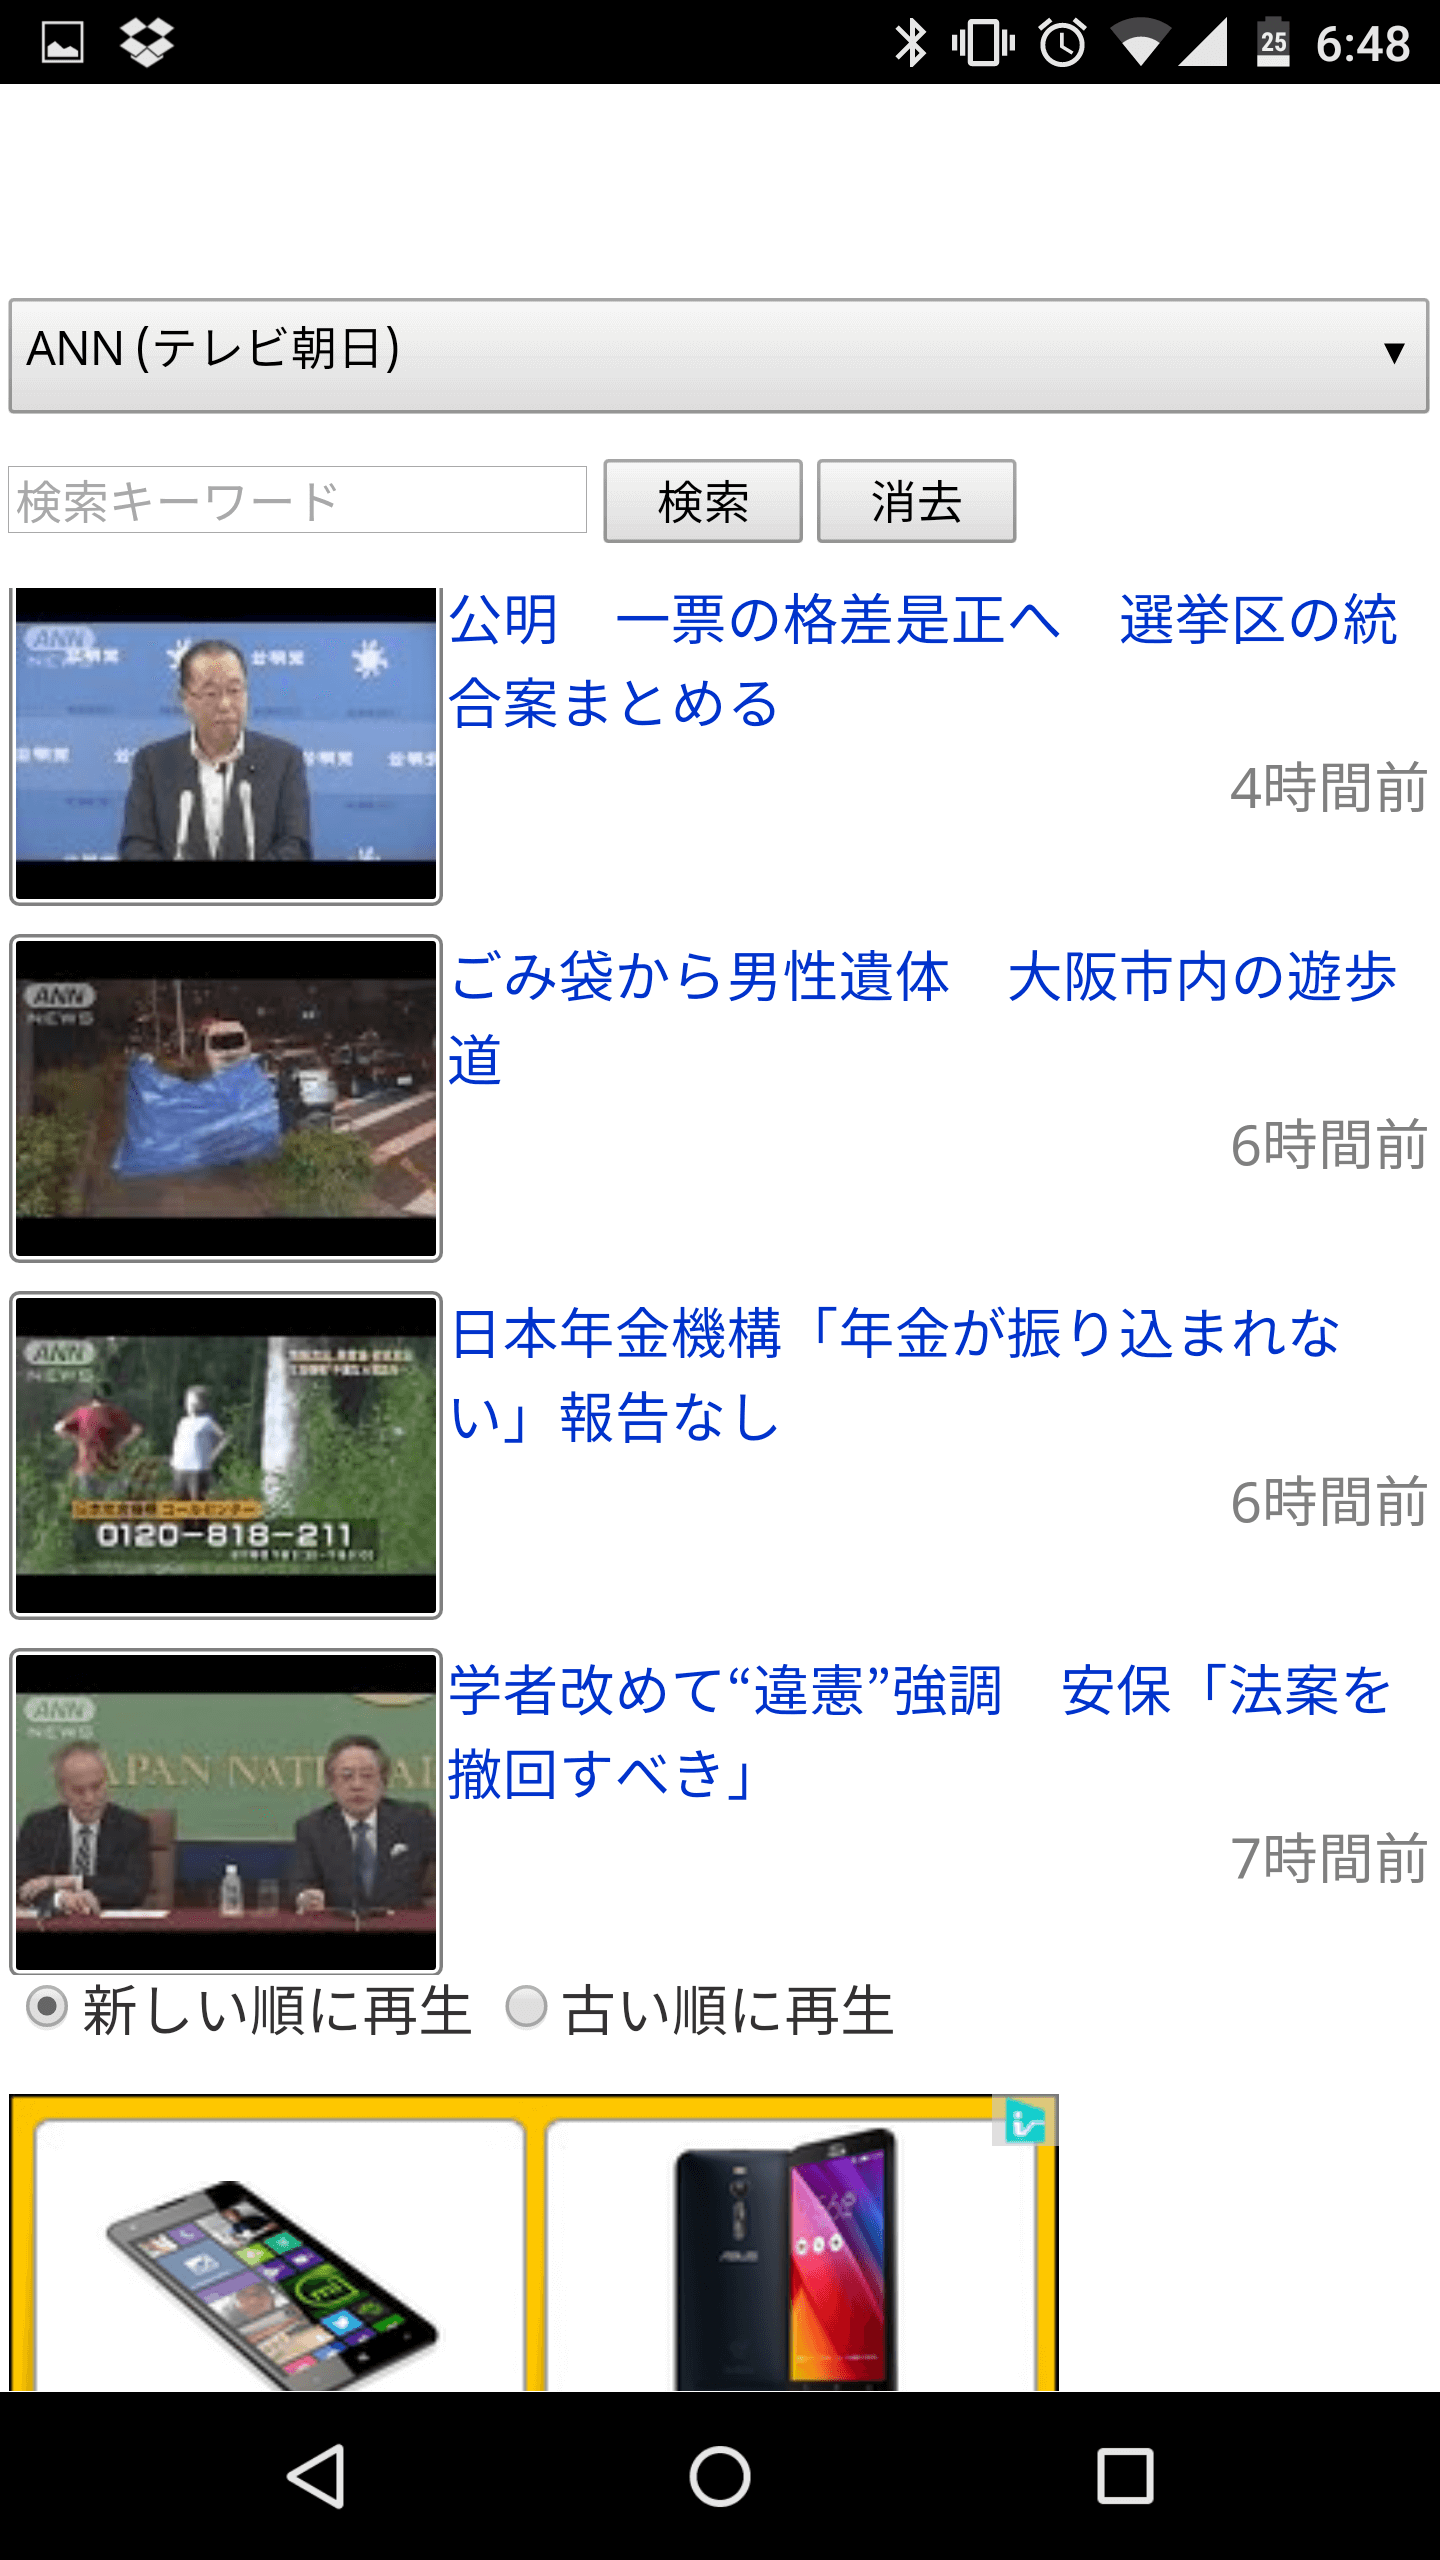 動画 ニュース 連続 再生 nettv news on the web part